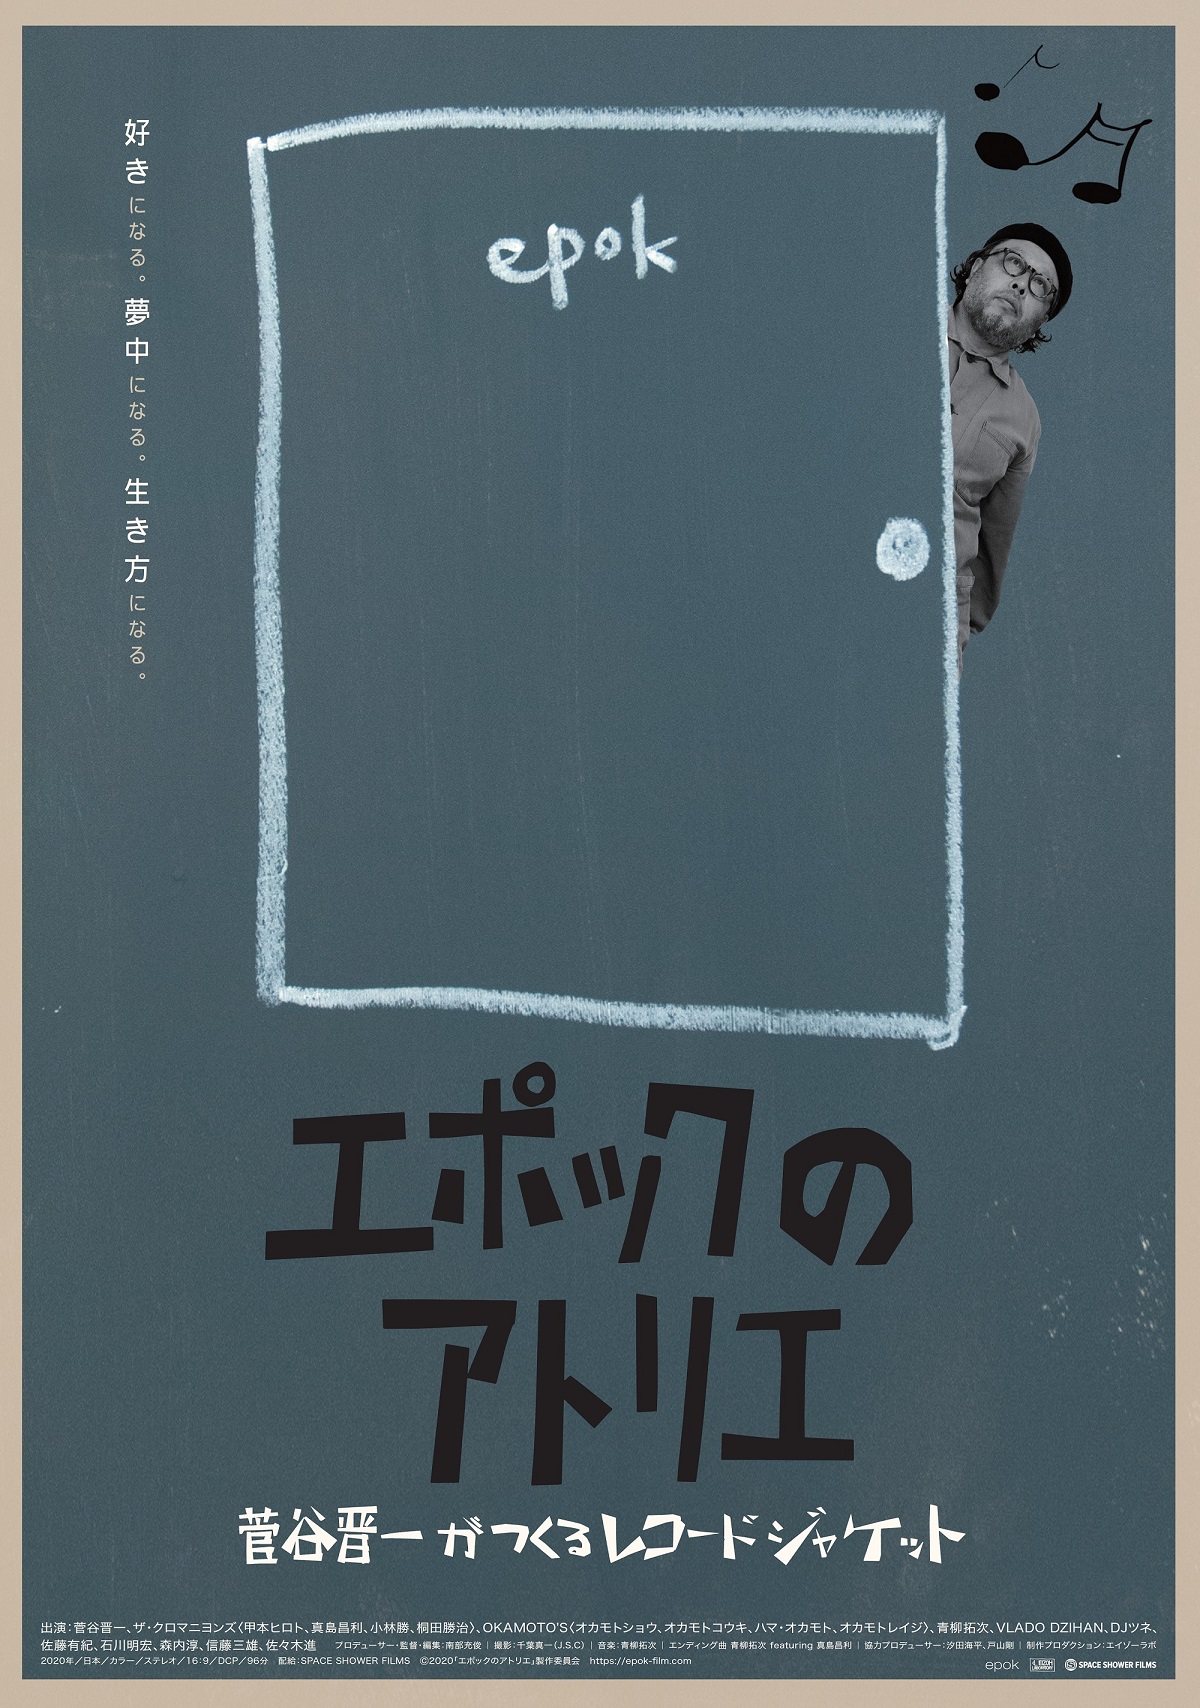 ザ・クロマニヨンズらのレコードジャケットをデザイン　菅谷晋一を追う映画「エポックのアトリエ」公開決定